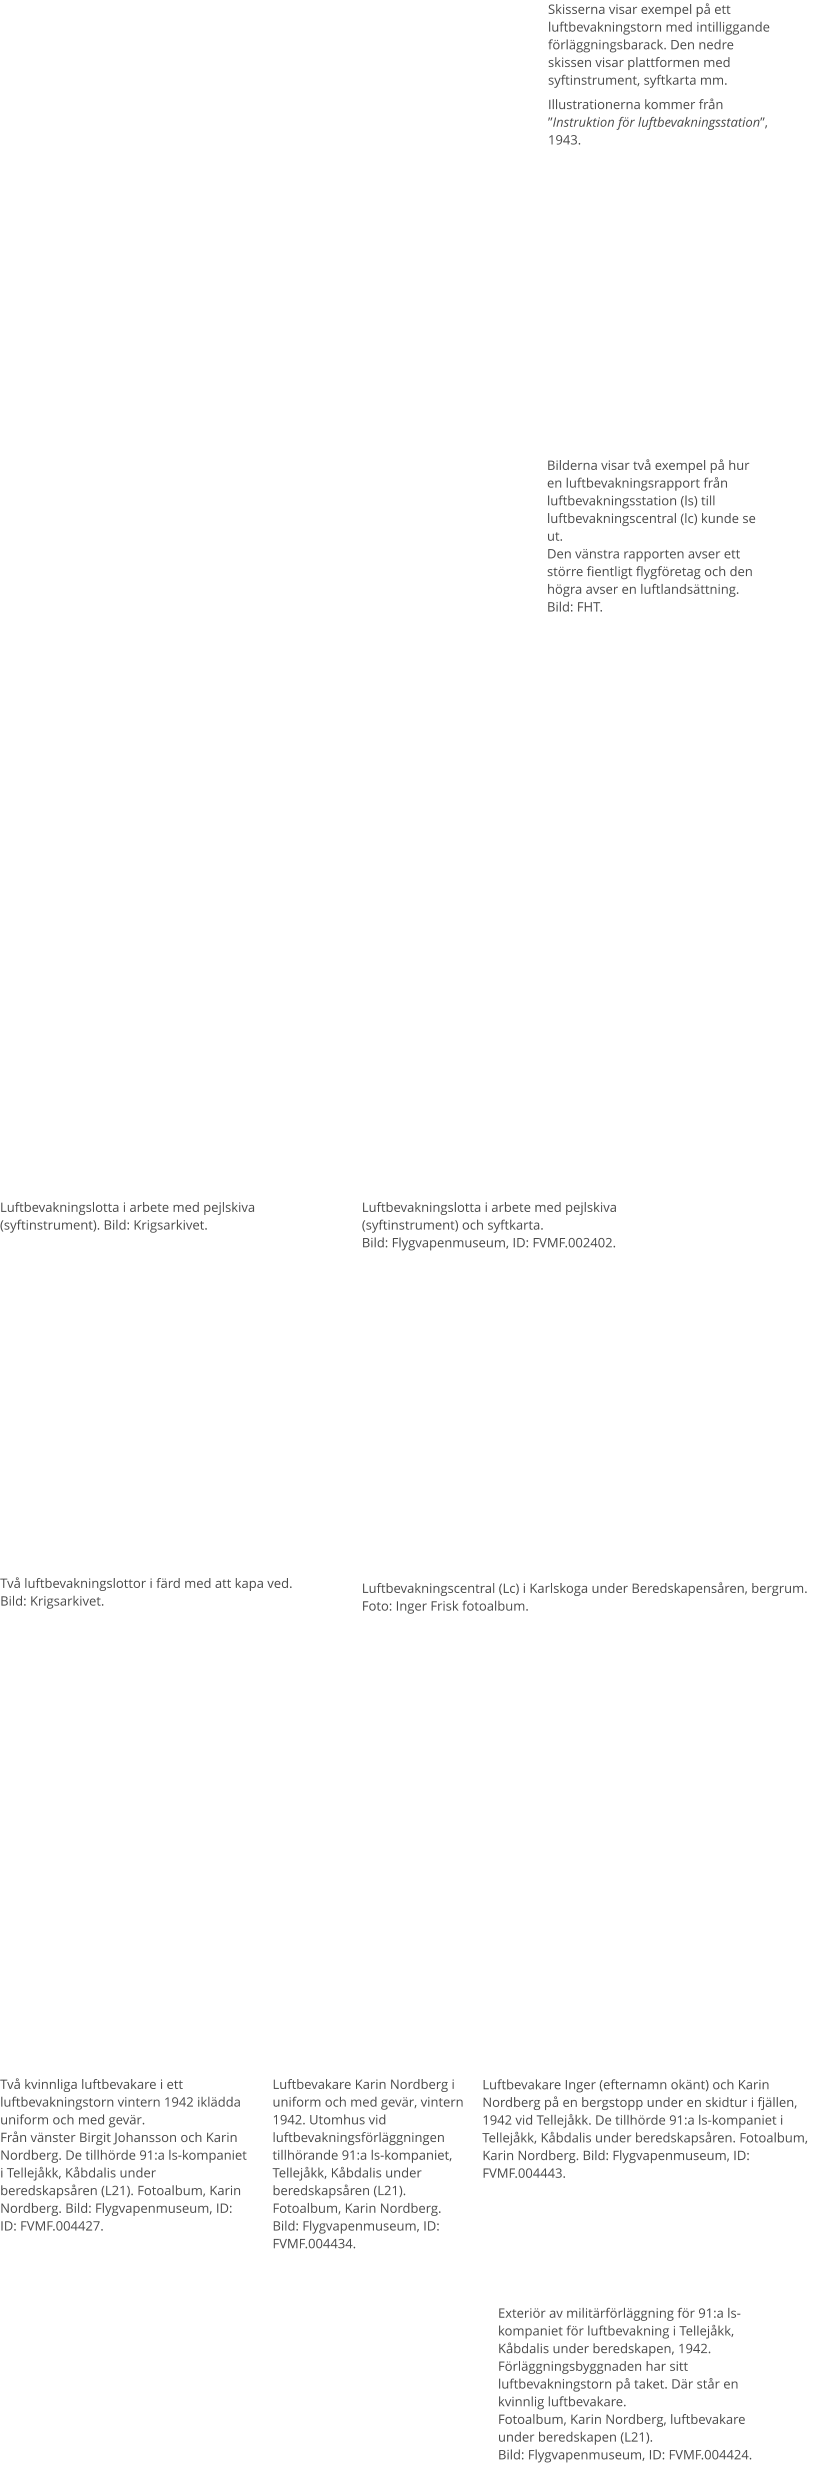 Skisserna visar exempel på ett luftbevakningstorn med intilliggande förläggningsbarack. Den nedre skissen visar plattformen med syftinstrument, syftkarta mm. Illustrationerna kommer från ”Instruktion för luftbevakningsstation”, 1943. Bilderna visar två exempel på hur en luftbevakningsrapport från luftbevakningsstation (ls) till luftbevakningscentral (lc) kunde se ut. Den vänstra rapporten avser ett större fientligt flygföretag och den högra avser en luftlandsättning. Bild: FHT. Två luftbevakningslottor i färd med att kapa ved.Bild: Krigsarkivet. Luftbevakningslotta i arbete med pejlskiva (syftinstrument). Bild: Krigsarkivet. Luftbevakningslotta i arbete med pejlskiva (syftinstrument) och syftkarta. Bild: Flygvapenmuseum, ID: FVMF.002402. Två kvinnliga luftbevakare i ett luftbevakningstorn vintern 1942 iklädda uniform och med gevär. Från vänster Birgit Johansson och Karin Nordberg. De tillhörde 91:a ls-kompaniet i Tellejåkk, Kåbdalis under beredskapsåren (L21). Fotoalbum, Karin Nordberg. Bild: Flygvapenmuseum, ID: ID: FVMF.004427. Luftbevakare Karin Nordberg i uniform och med gevär, vintern 1942. Utomhus vid luftbevakningsförläggningen tillhörande 91:a ls-kompaniet, Tellejåkk, Kåbdalis under beredskapsåren (L21). Fotoalbum, Karin Nordberg. Bild: Flygvapenmuseum, ID: FVMF.004434. Luftbevakare Inger (efternamn okänt) och Karin Nordberg på en bergstopp under en skidtur i fjällen, 1942 vid Tellejåkk. De tillhörde 91:a ls-kompaniet i Tellejåkk, Kåbdalis under beredskapsåren. Fotoalbum, Karin Nordberg. Bild: Flygvapenmuseum, ID: FVMF.004443. Luftbevakningscentral (Lc) i Karlskoga under Beredskapensåren, bergrum. Foto: Inger Frisk fotoalbum. Exteriör av militärförläggning för 91:a ls-kompaniet för luftbevakning i Tellejåkk, Kåbdalis under beredskapen, 1942. Förläggningsbyggnaden har sitt luftbevakningstorn på taket. Där står en kvinnlig luftbevakare. Fotoalbum, Karin Nordberg, luftbevakare under beredskapen (L21). Bild: Flygvapenmuseum, ID: FVMF.004424.